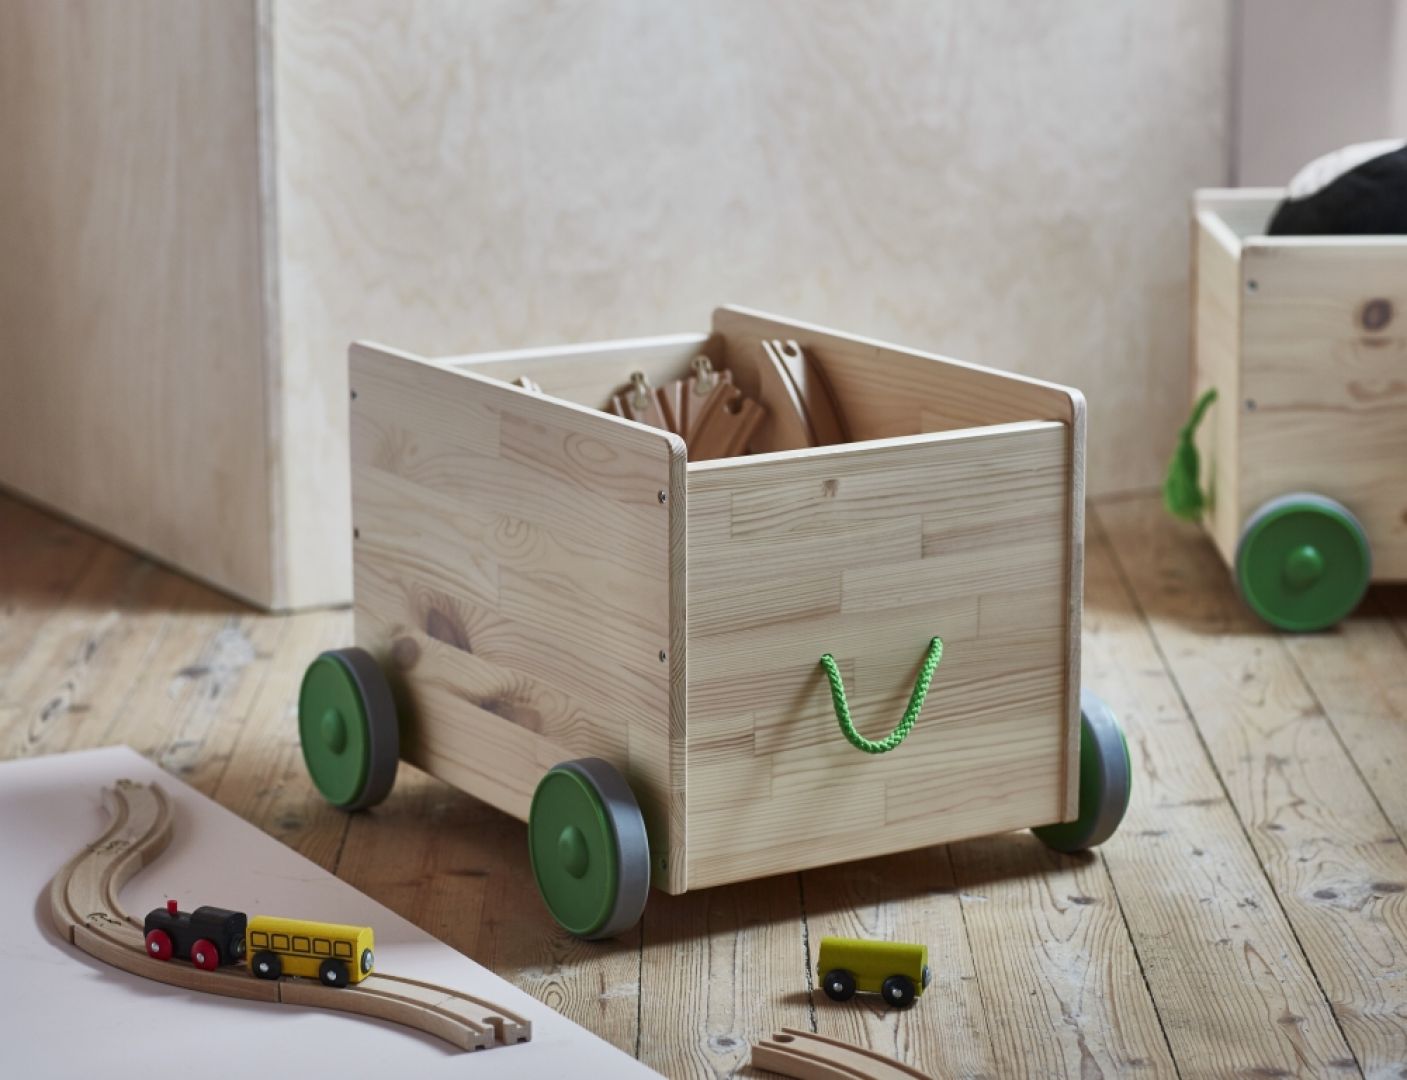 Skrzynie na kółkach pozwolą na przechowywanie zabawek, ale również wygodne ich przemieszczanie. Fot. IKEA